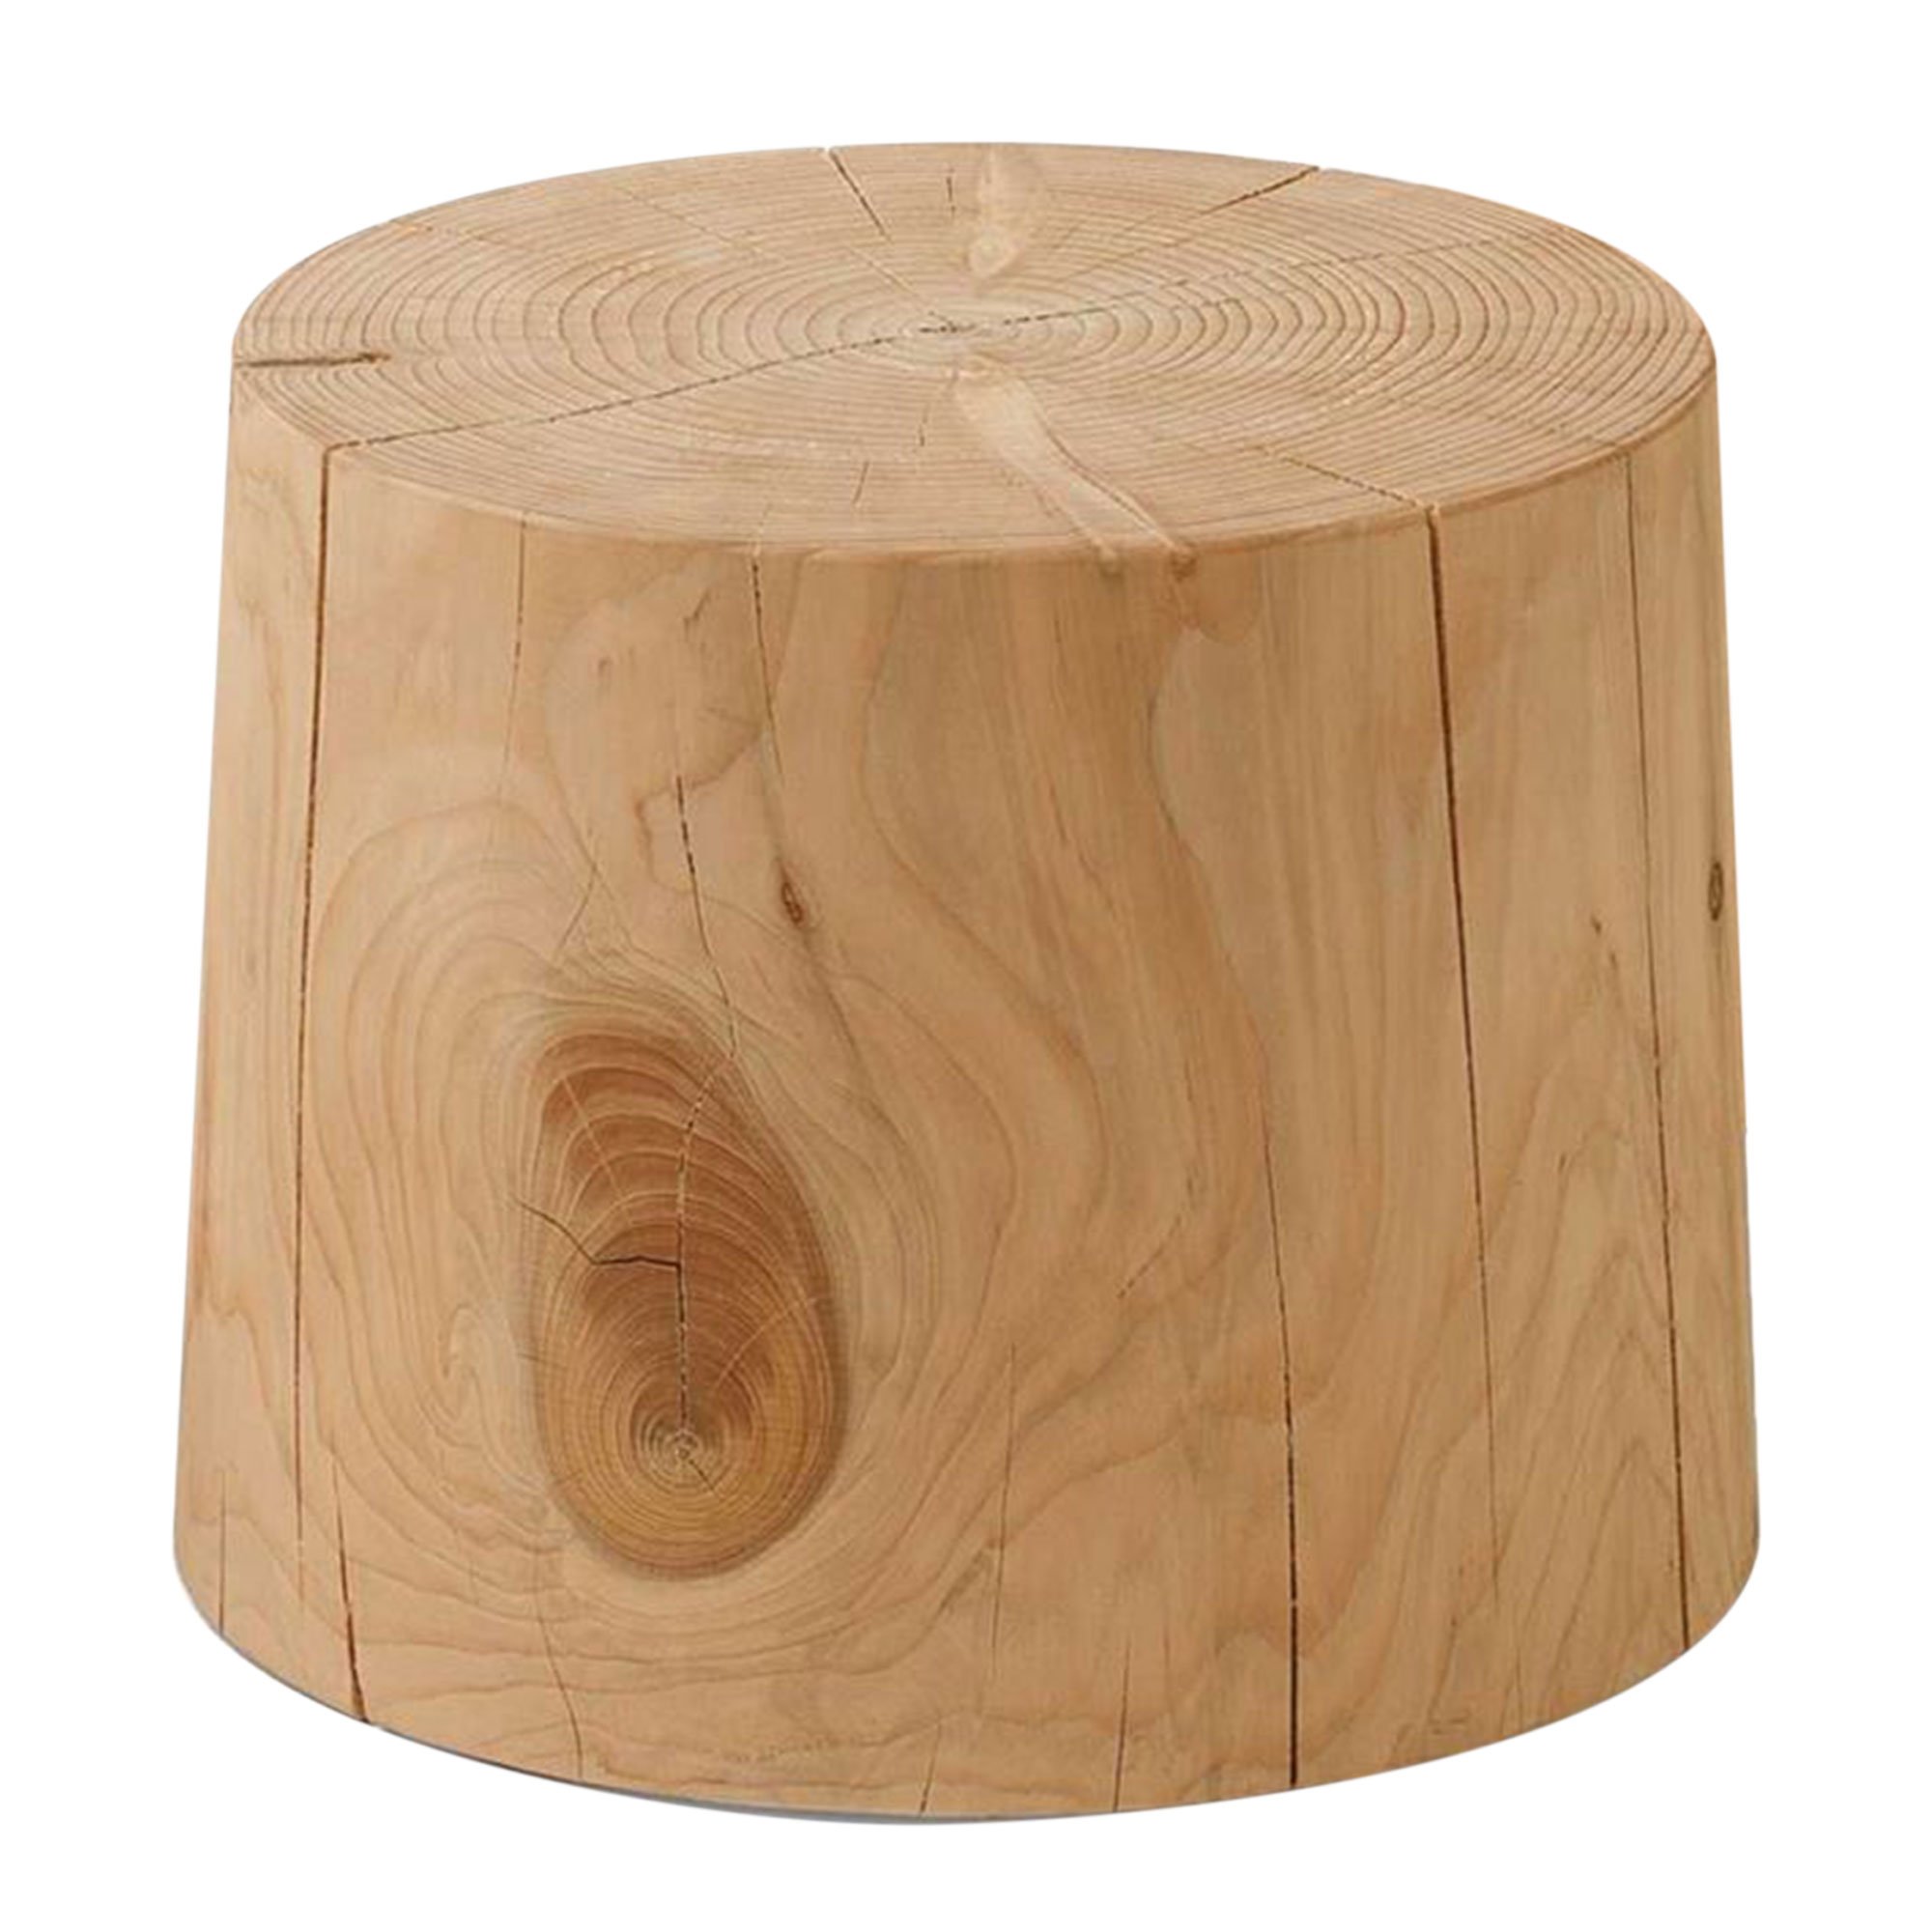 RIVA Legno Vivo Small Table 40x30cm, Round, Cedar Wood | Barker & Stonehouse